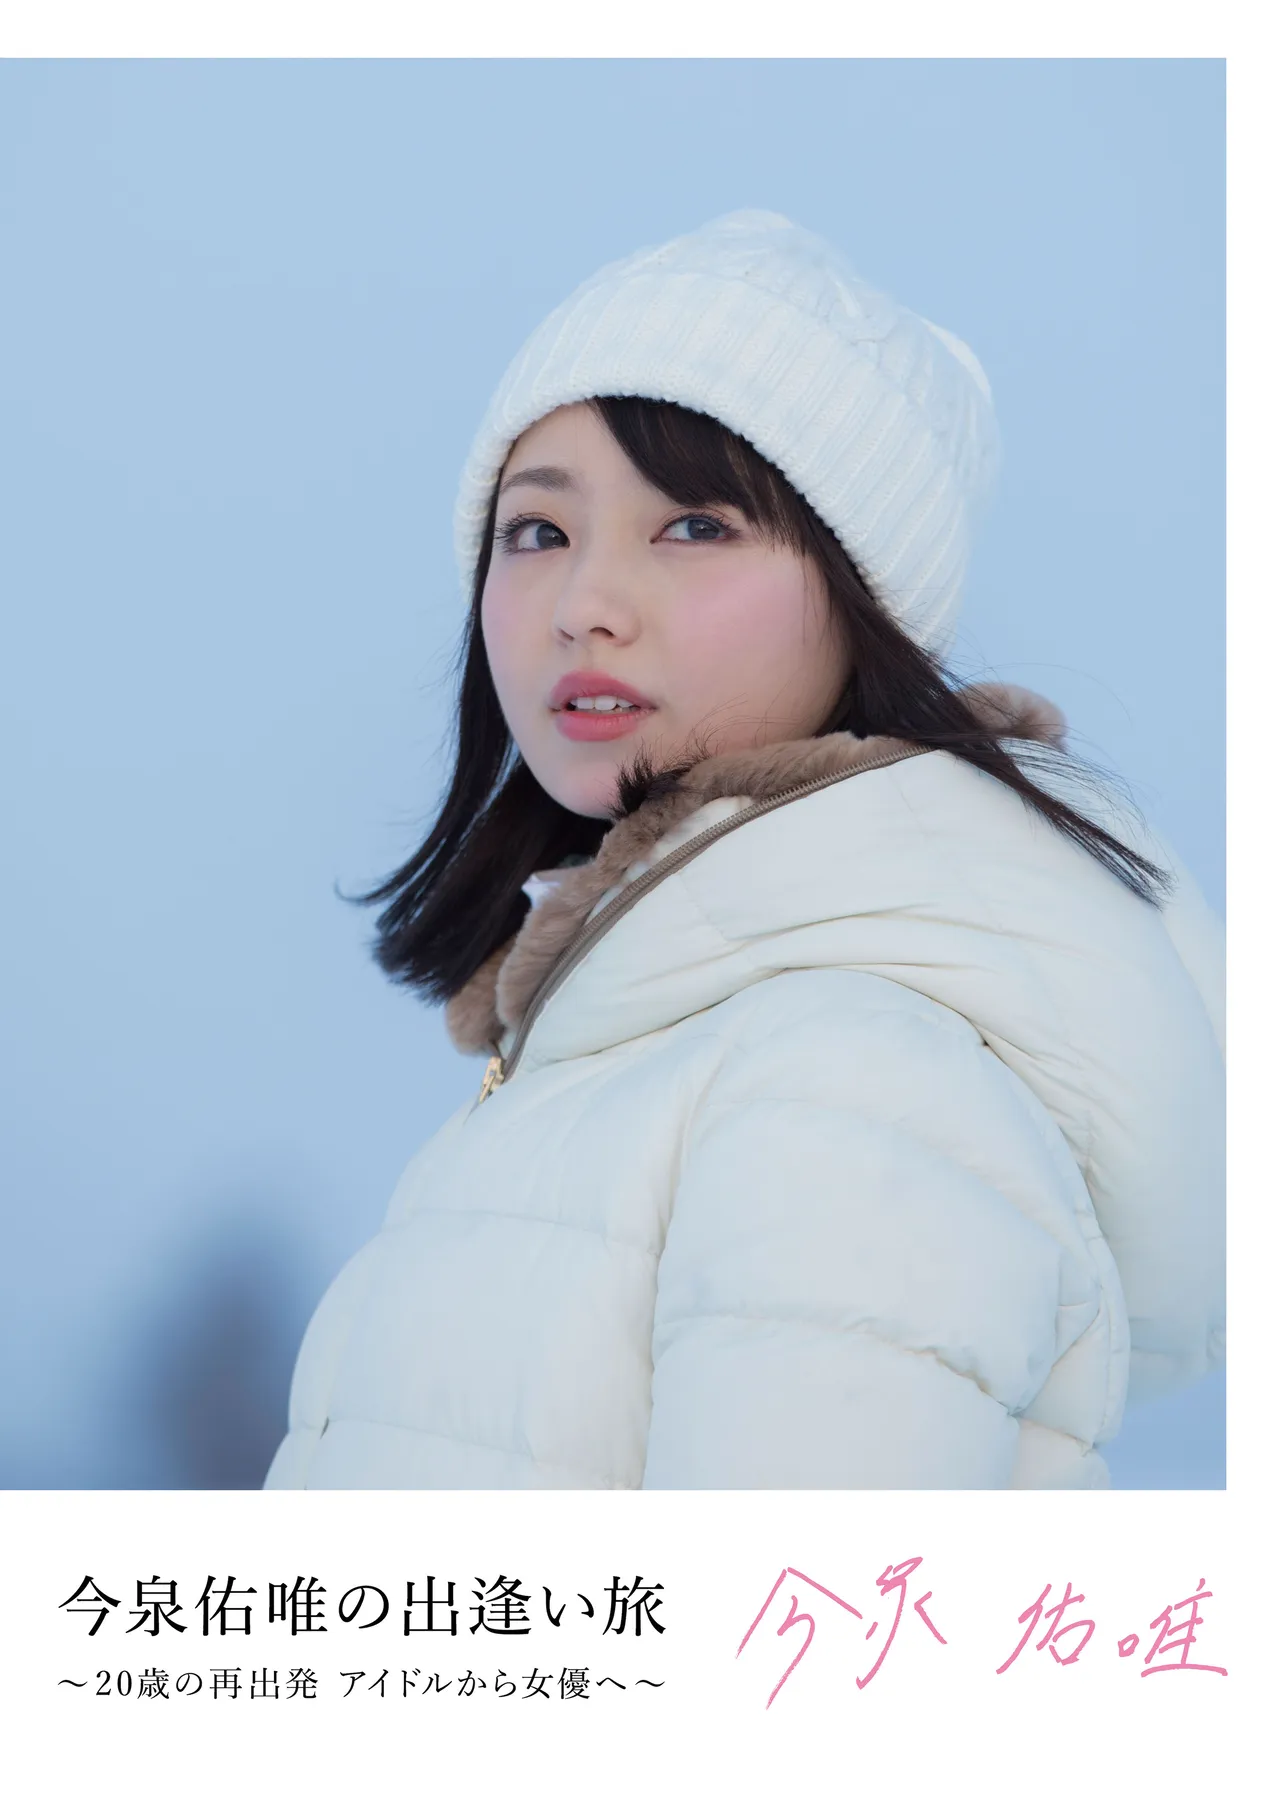 今泉佑唯にとって初の冠番組「今泉佑唯の出逢い旅〜20歳の再出発  アイドルから女優へ〜」が、北海道で放送される